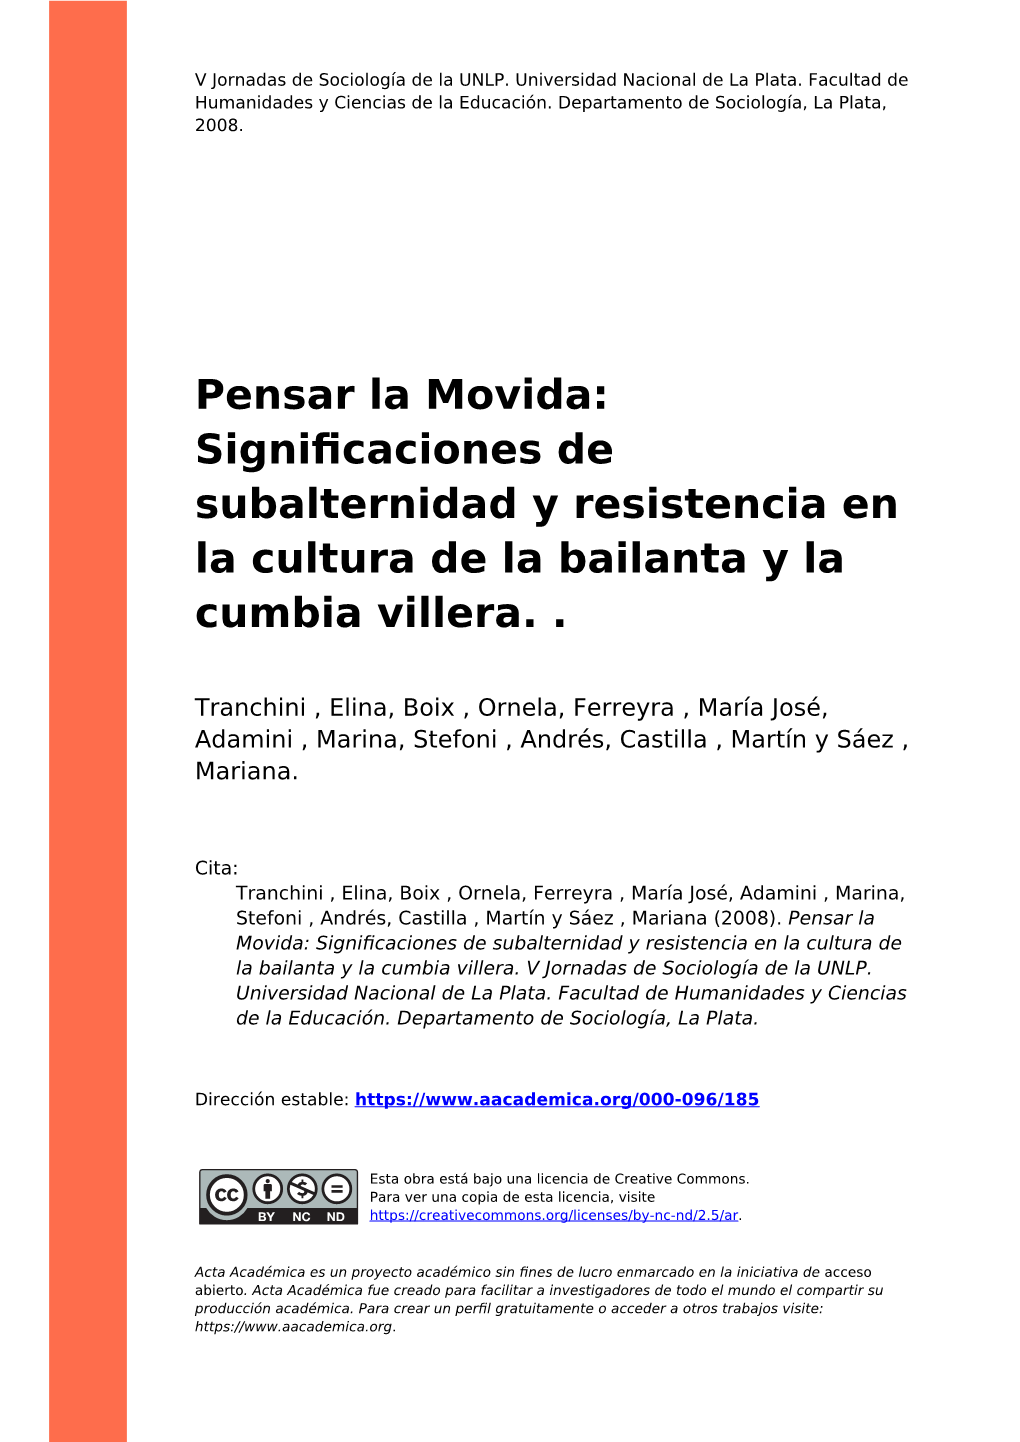 Pensar La Movida: Signiﬁcaciones De Subalternidad Y Resistencia En La Cultura De La Bailanta Y La Cumbia Villera